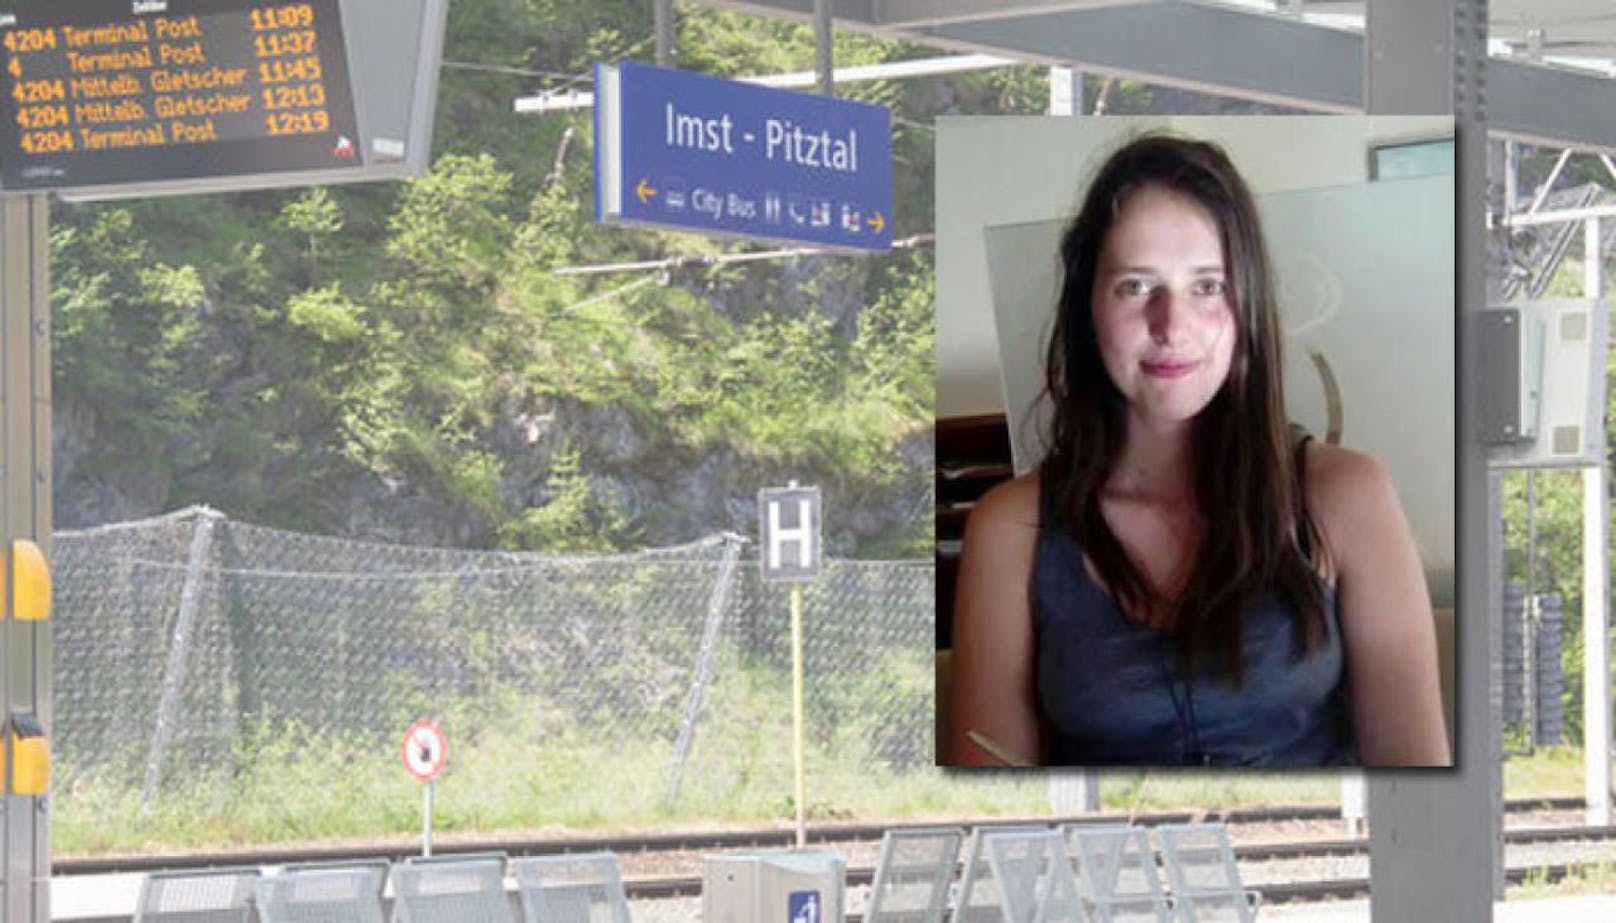 Tirolerin (18) wird seit Donnerstag vermisst